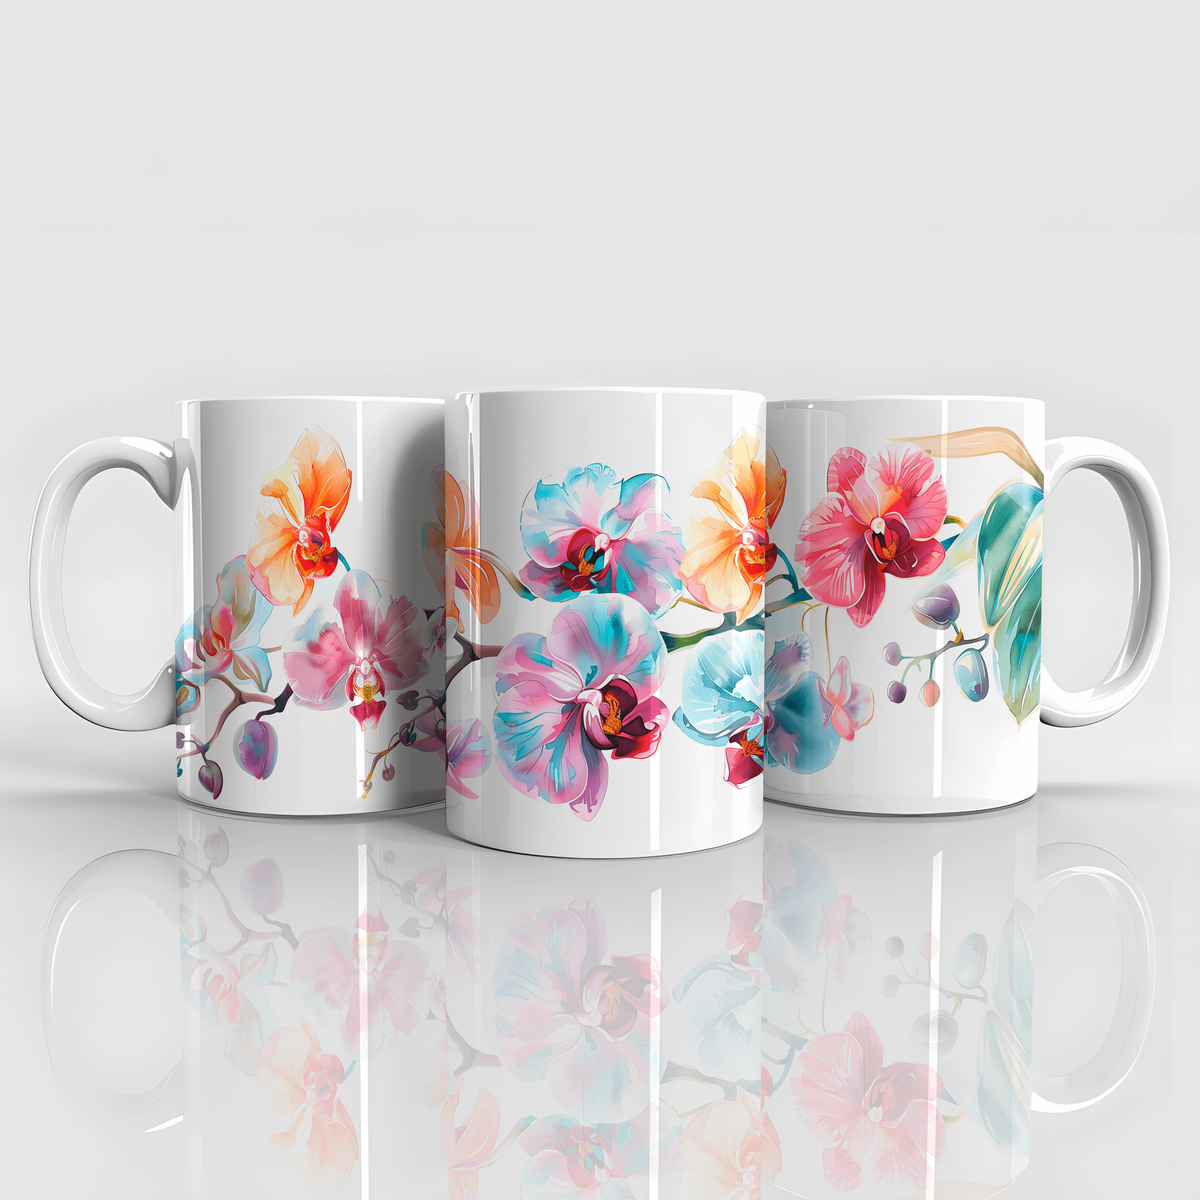 Nome do produto: Orquídeas coloridas